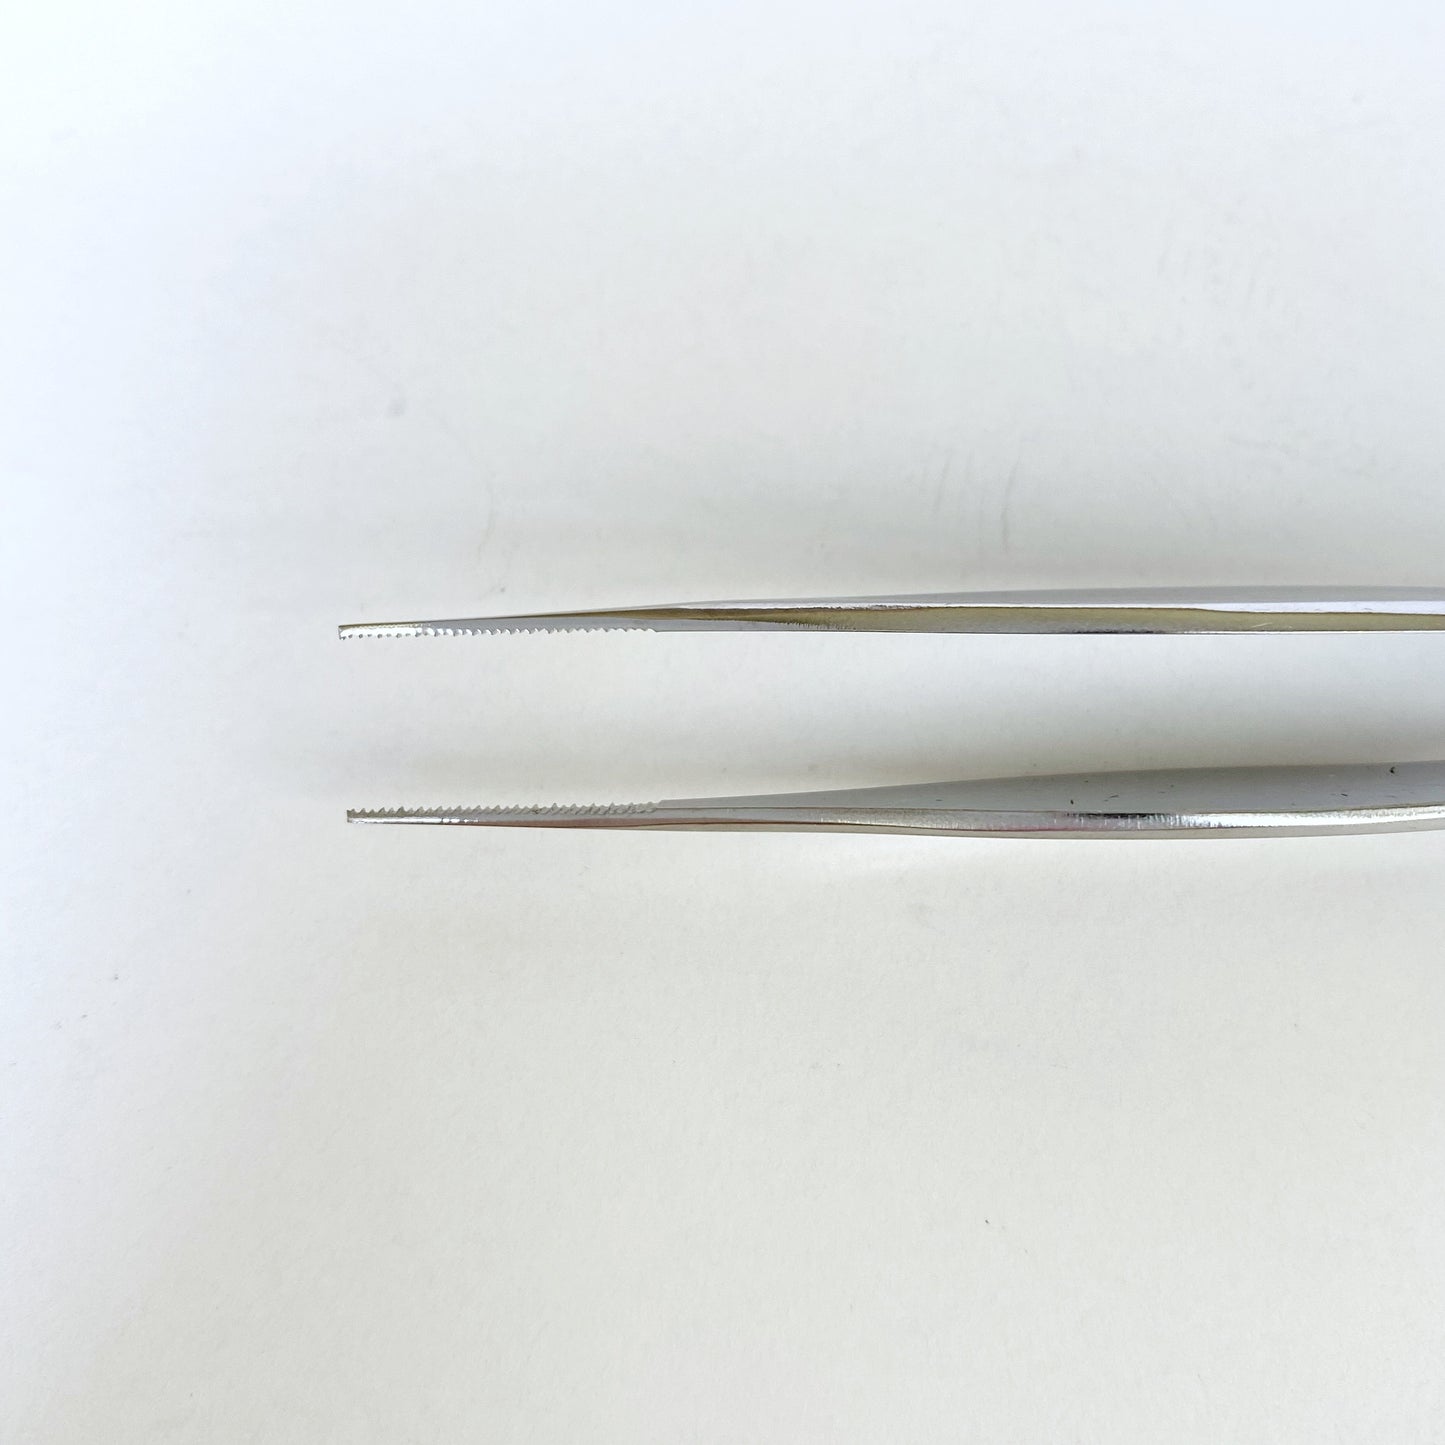 STALEKS PRO Pedicure Tweezers for Splinters, PODO10 (TP-10)